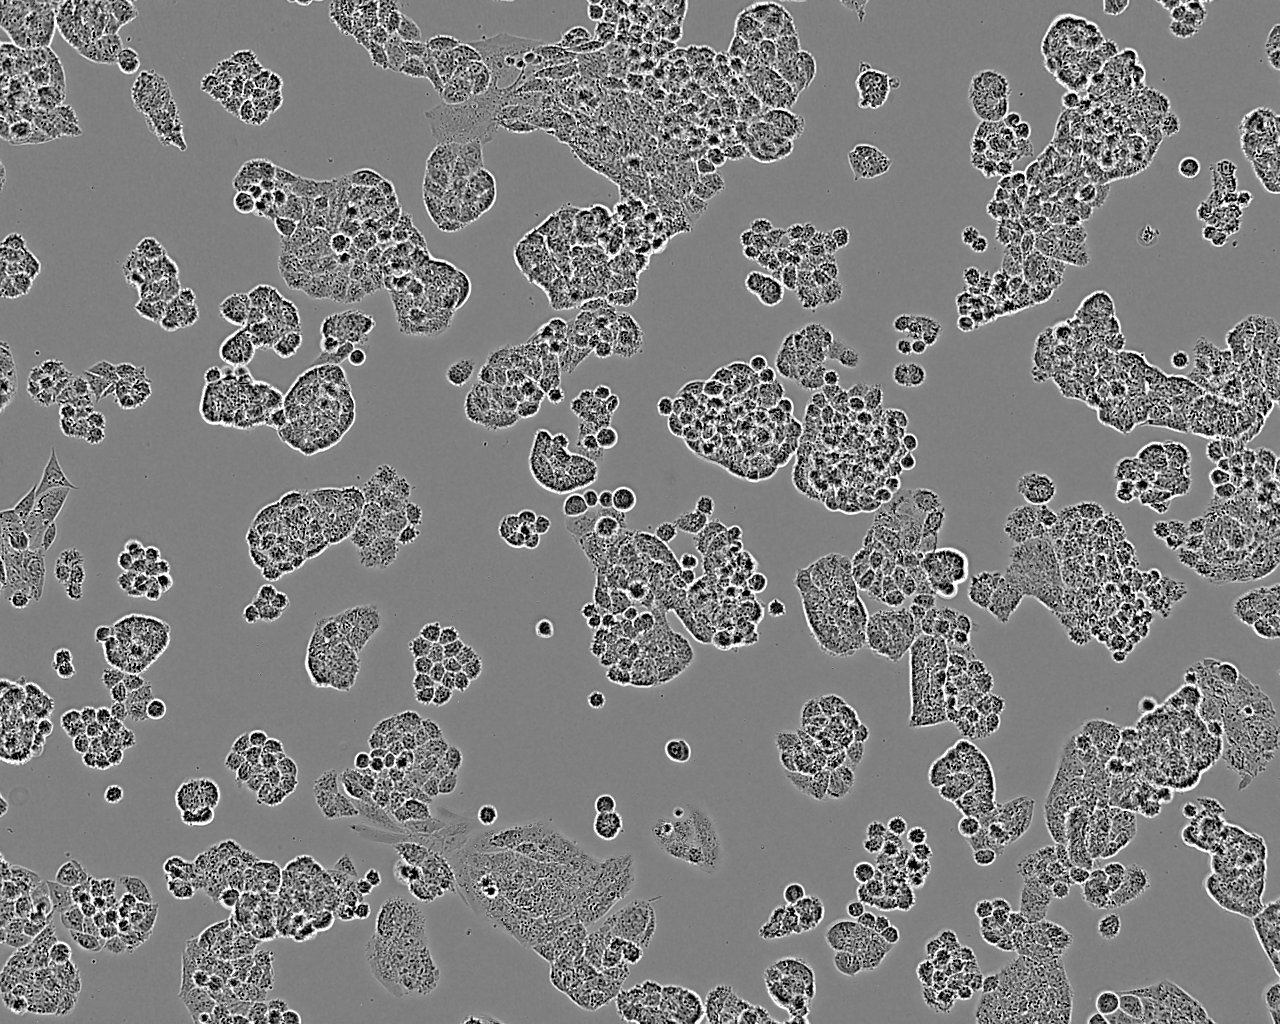 LA-795 epithelioid cells小鼠肺腺癌细胞系,LA-795 epithelioid cells